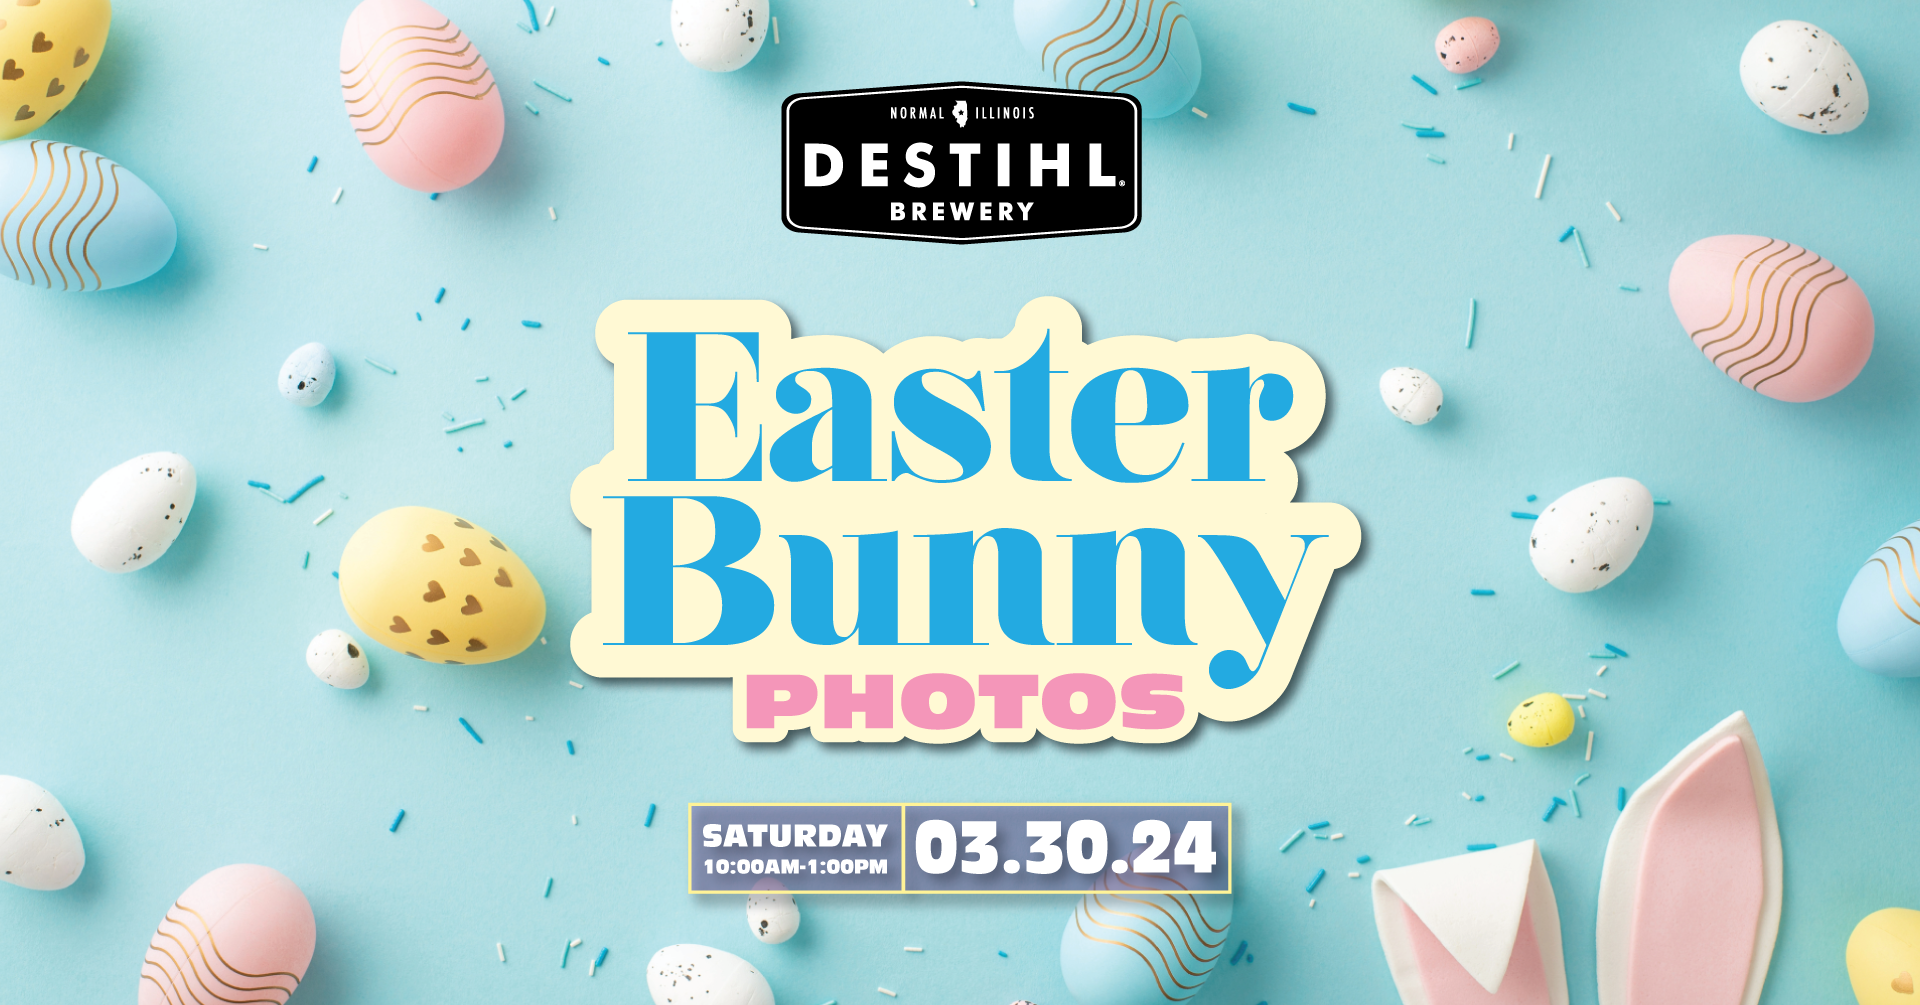 Easter Bunny Photos at DESTIHL!